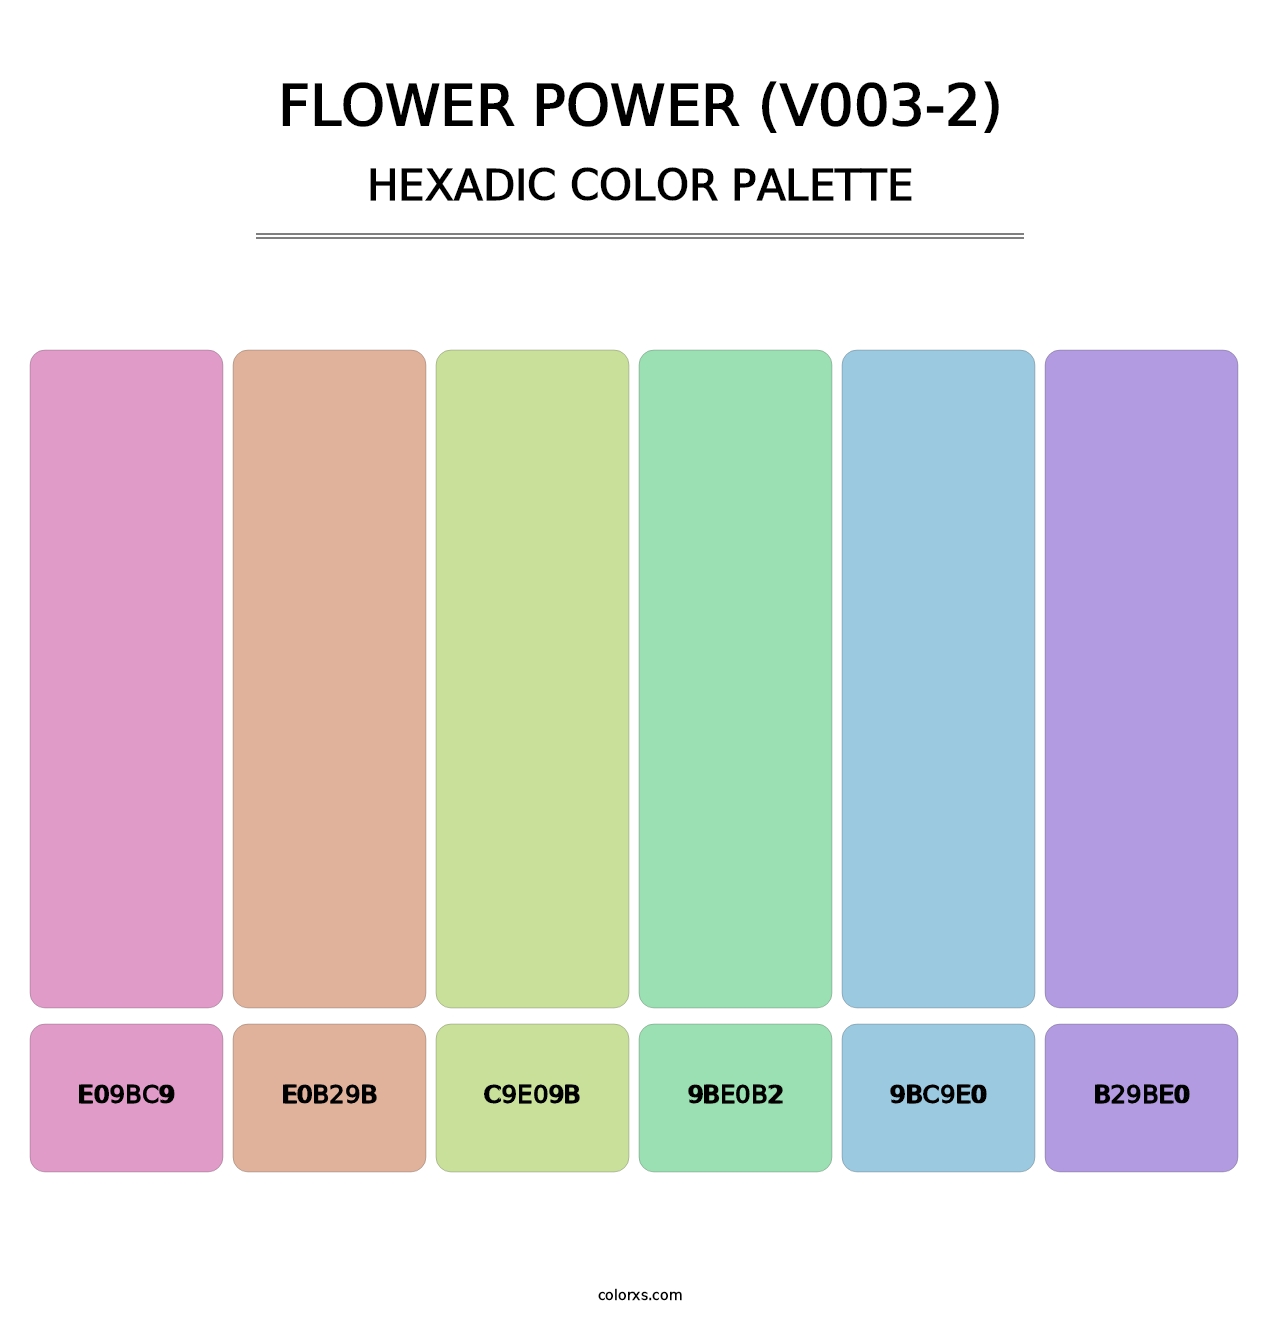 Flower Power (V003-2) - Hexadic Color Palette